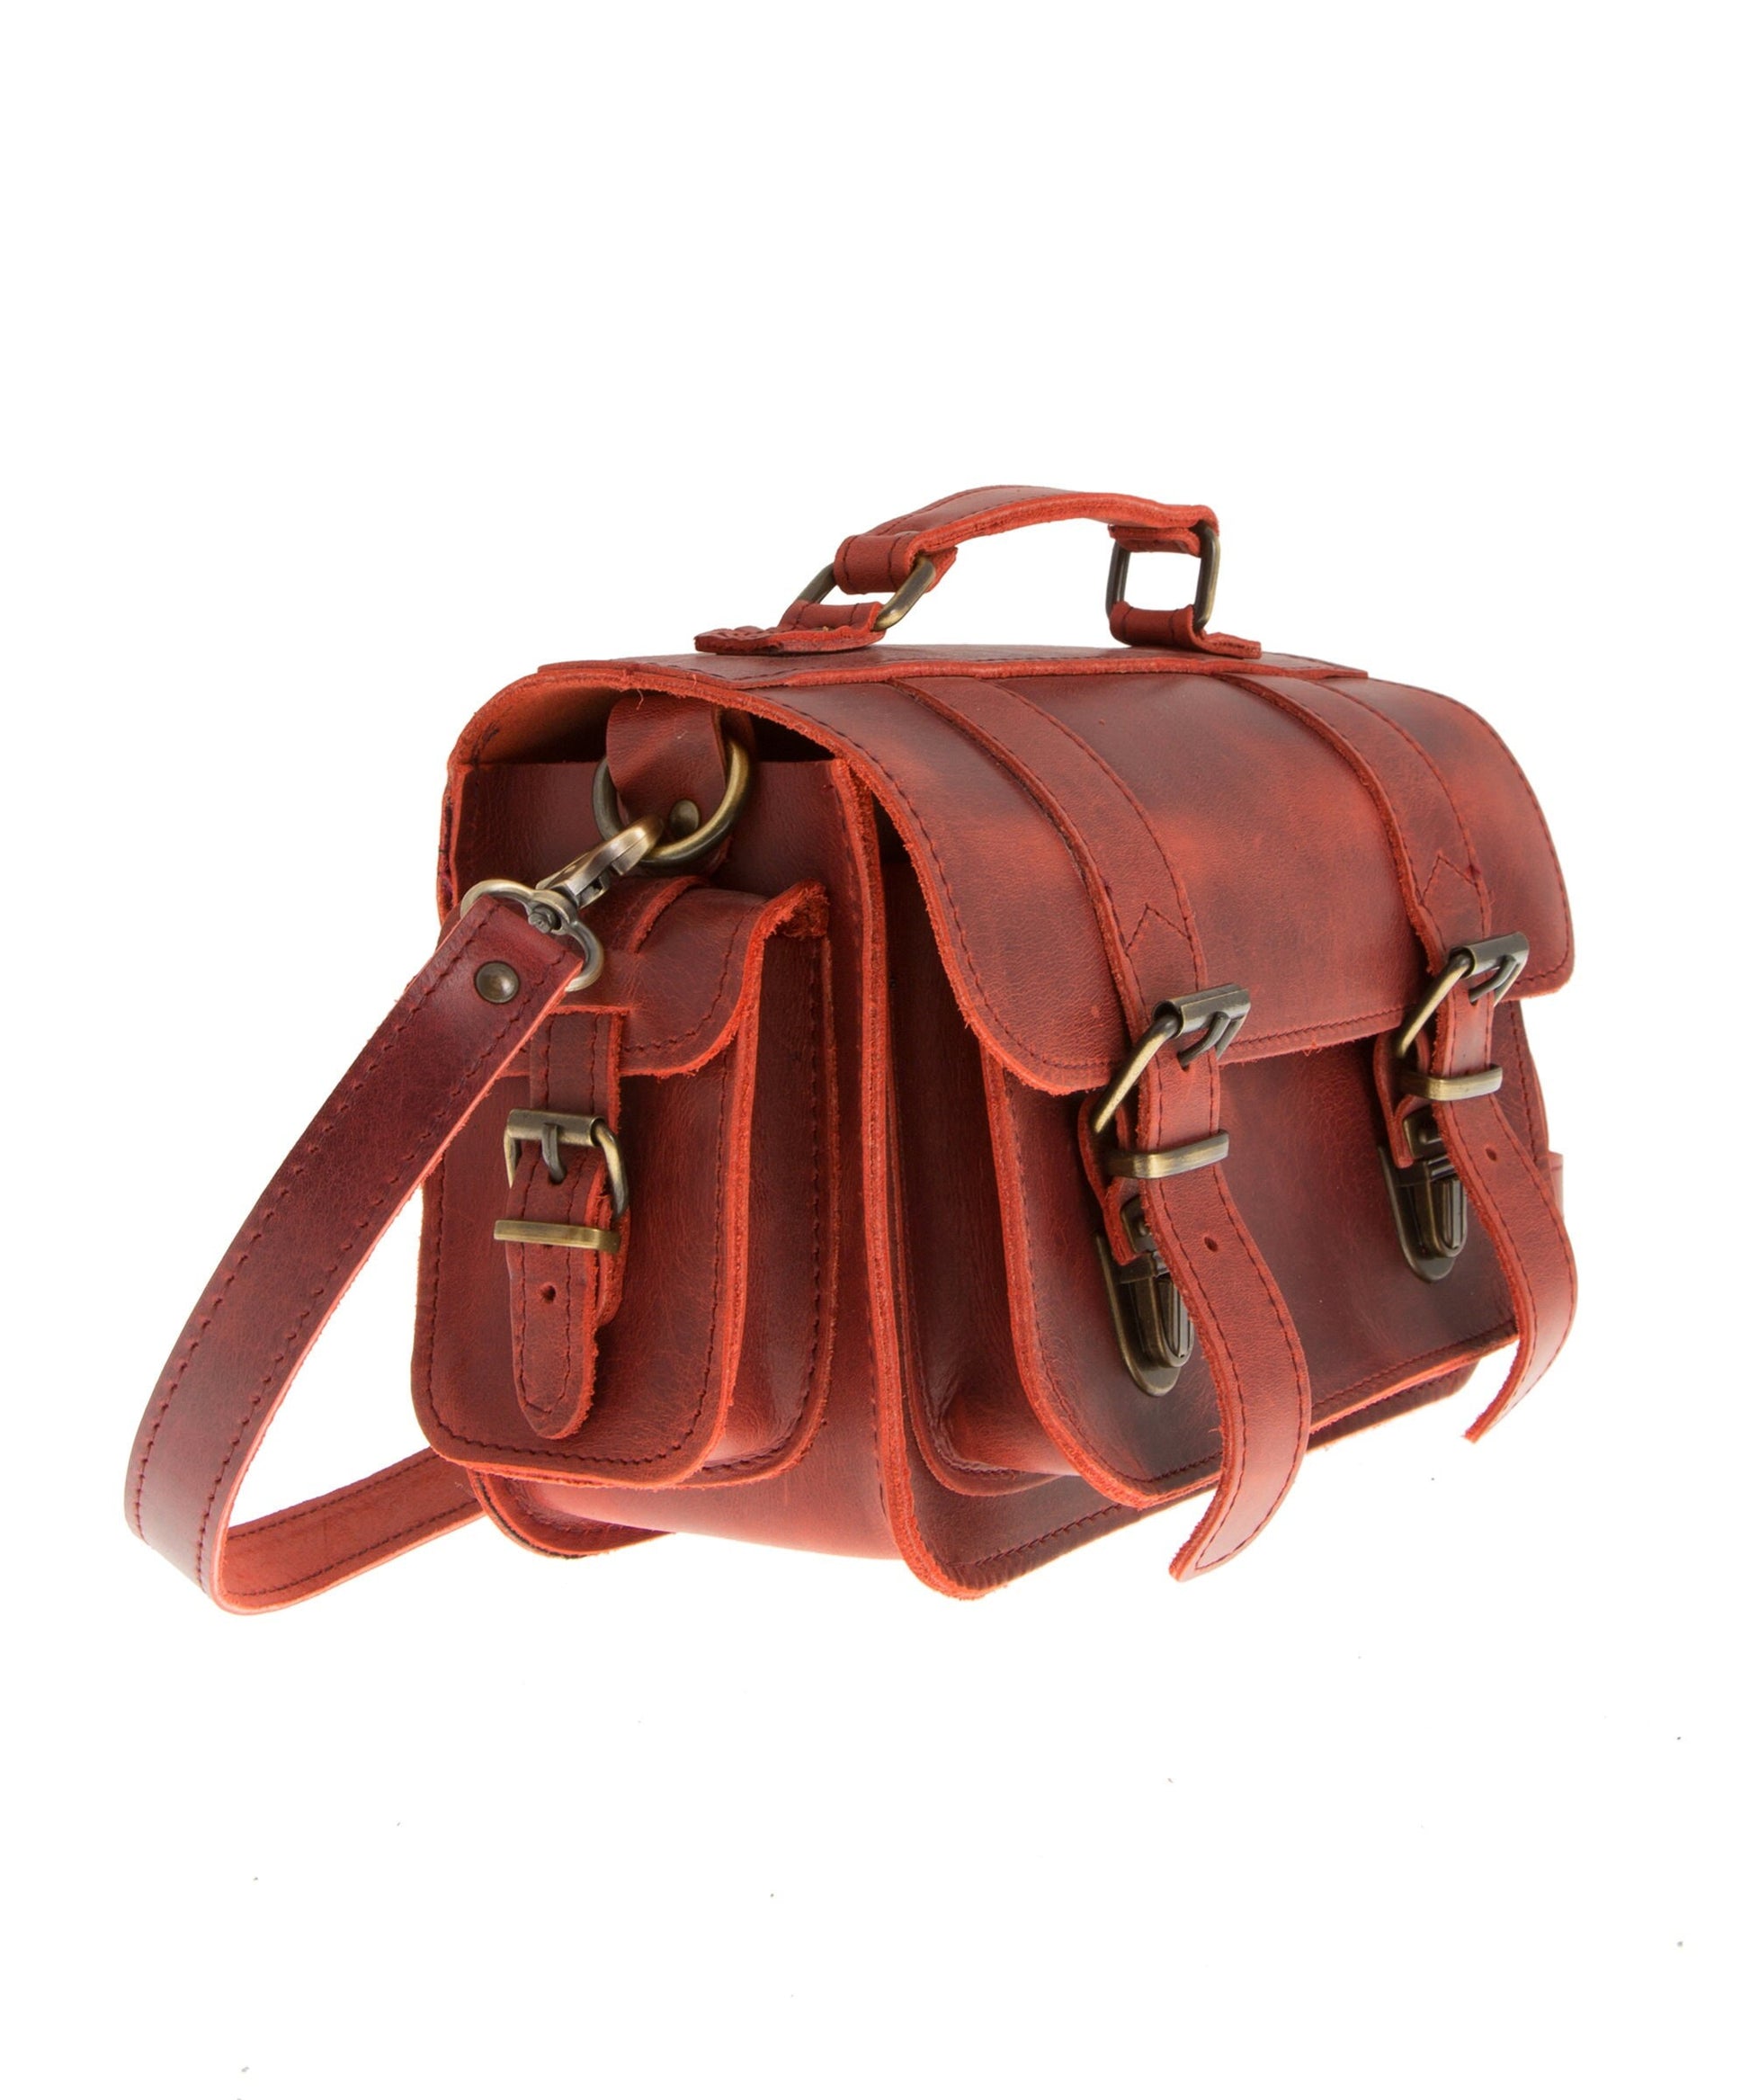 Small leather camera bag, Dslr camera bag, Camera case, Retro camera bag, Photographer gift